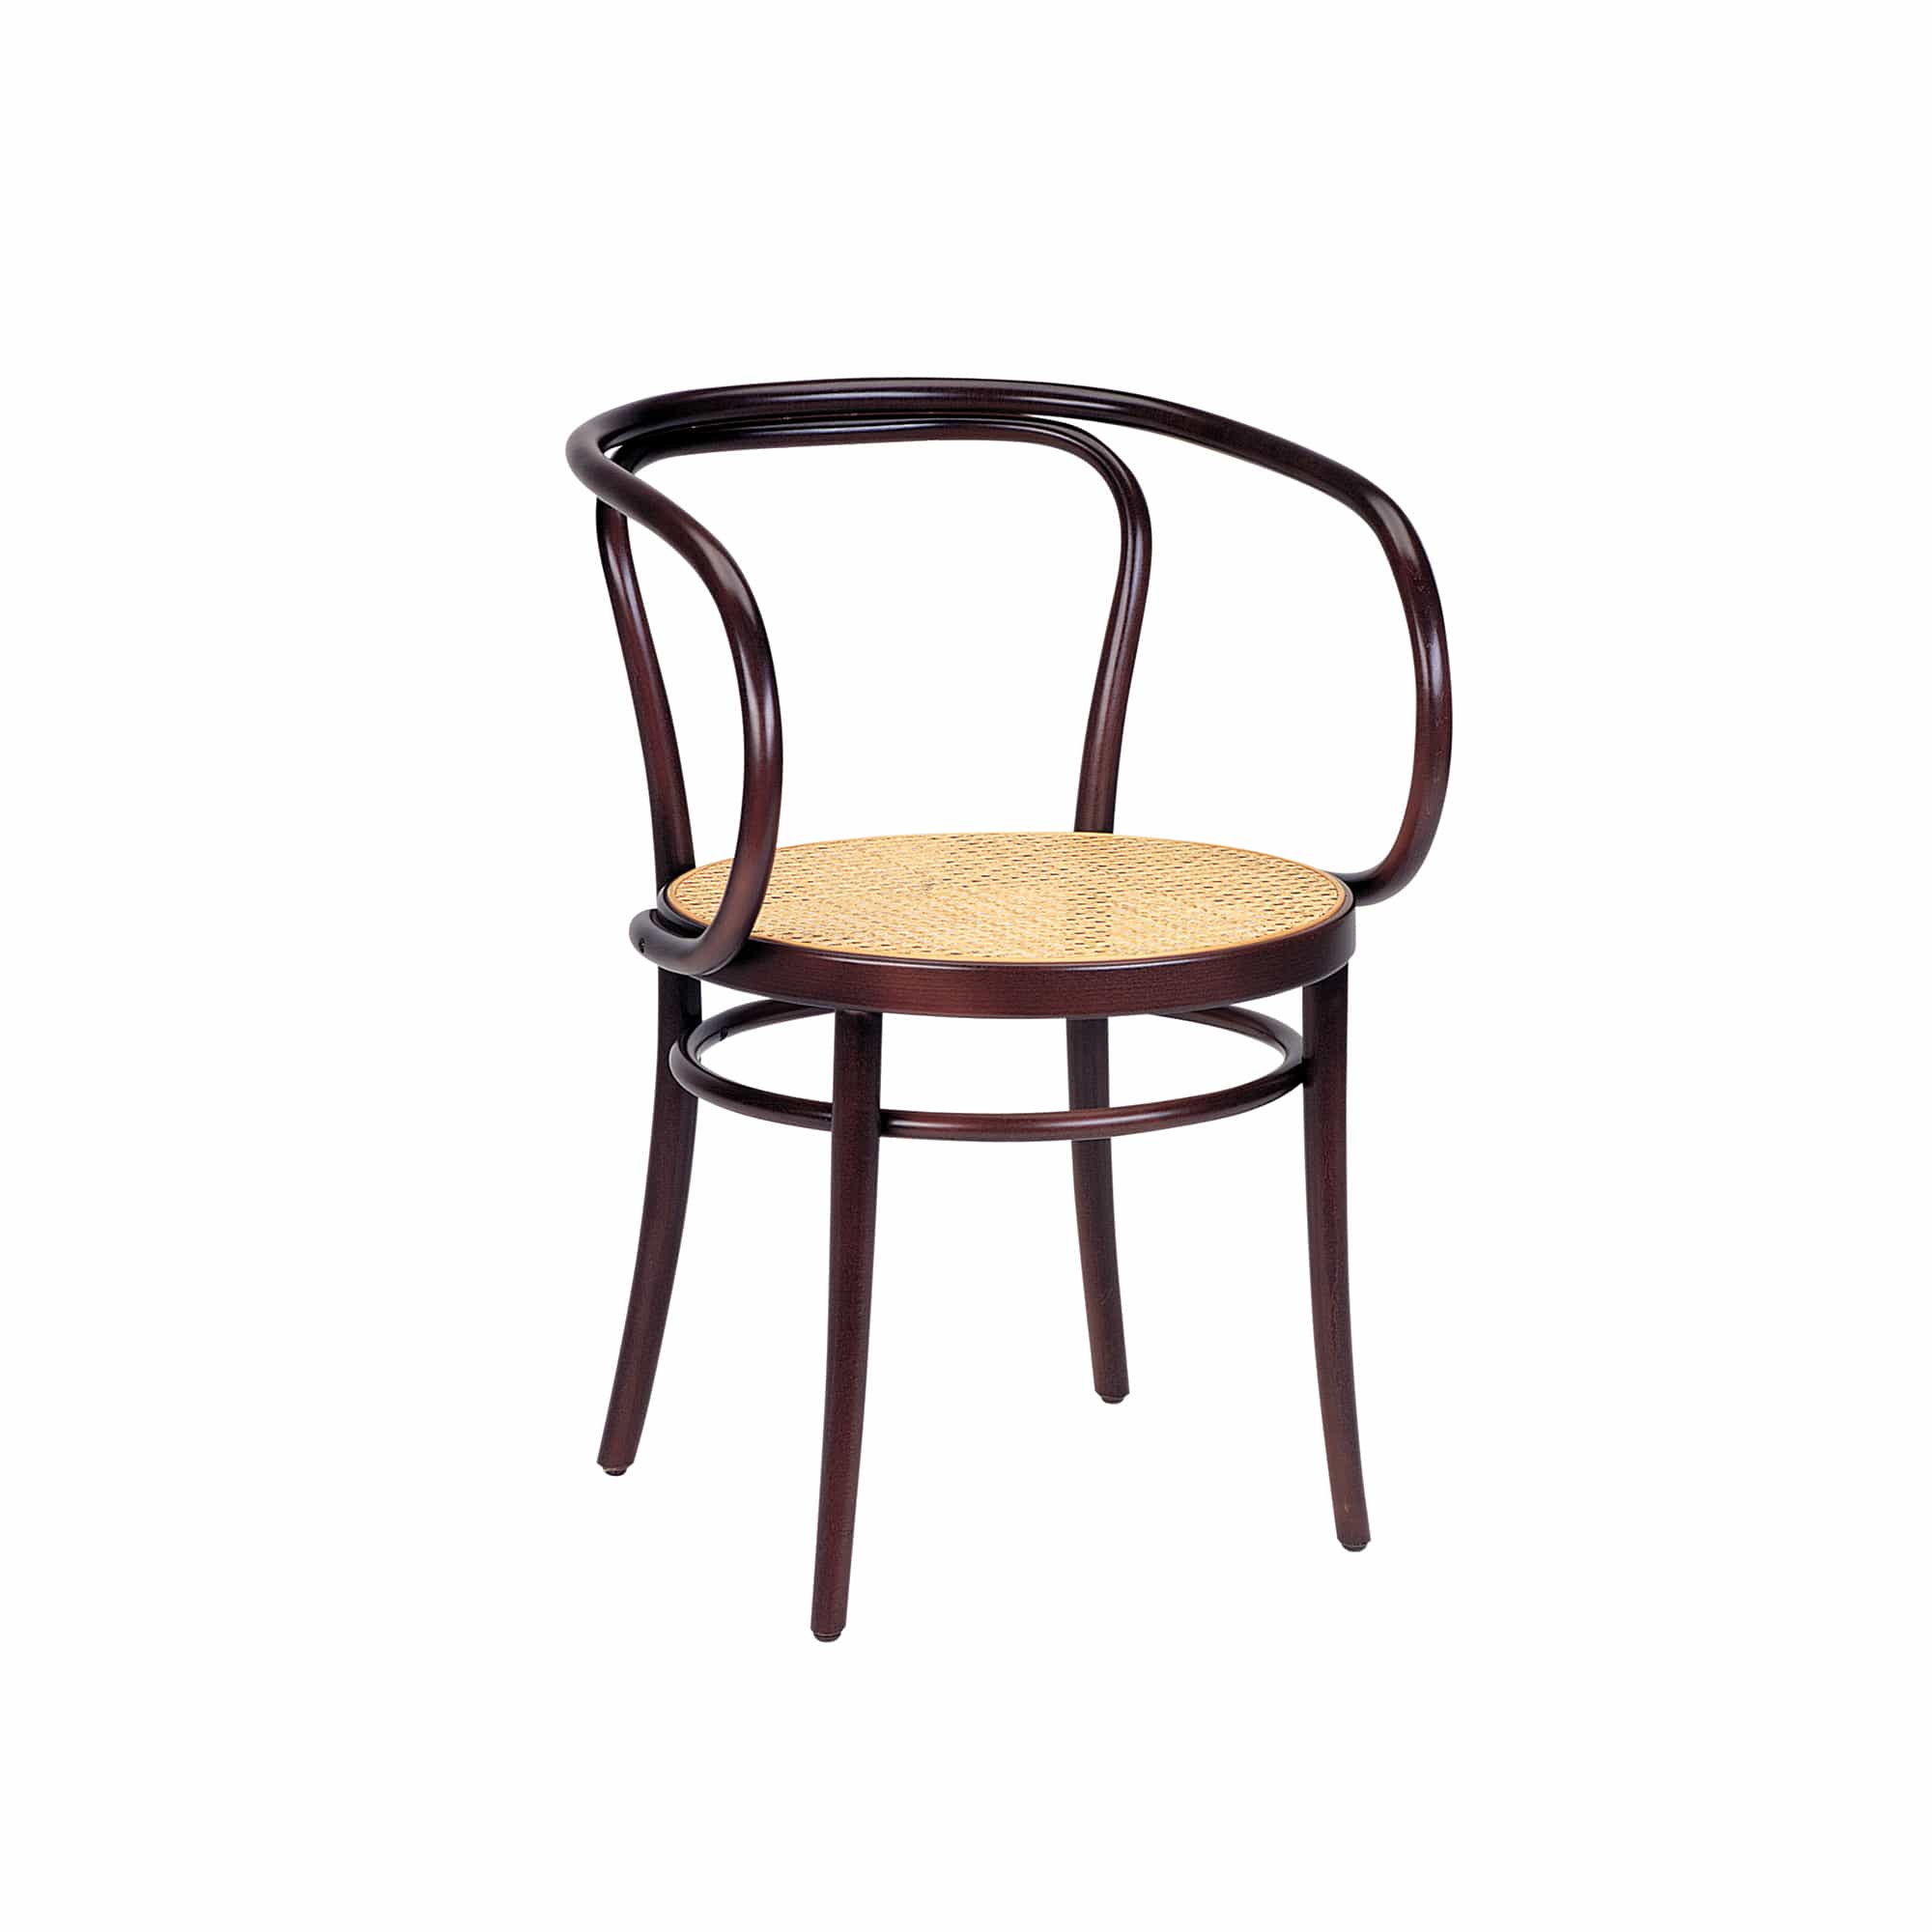 Wiener Stuhl - Woven Cane Seat